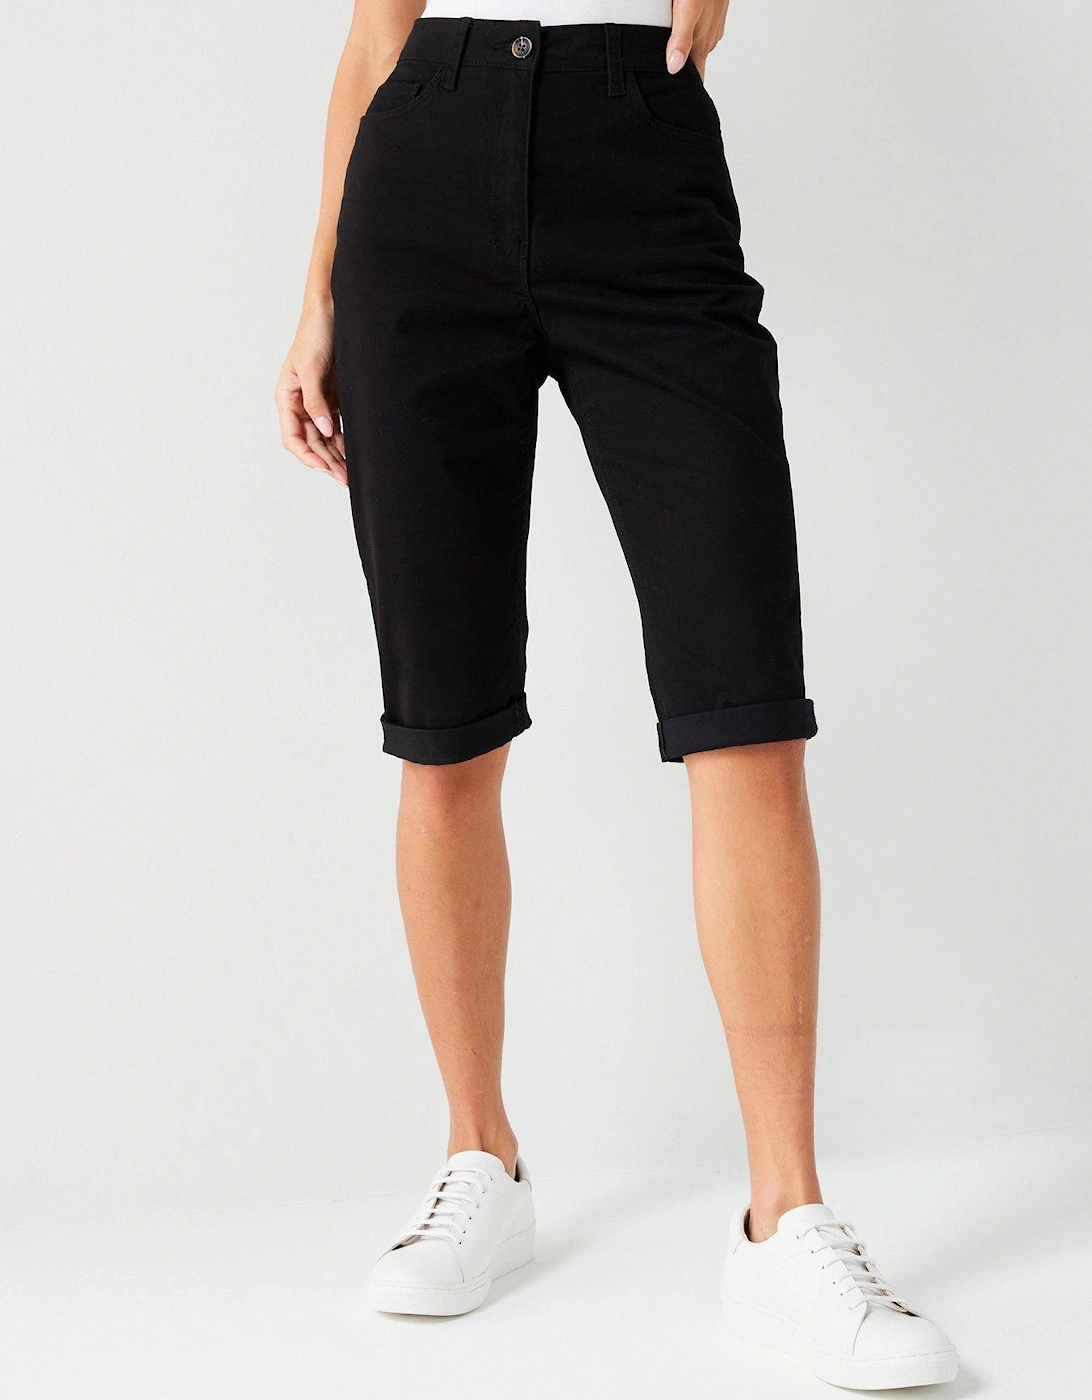 Sydney Stretch Shorts - Black, 7 of 6